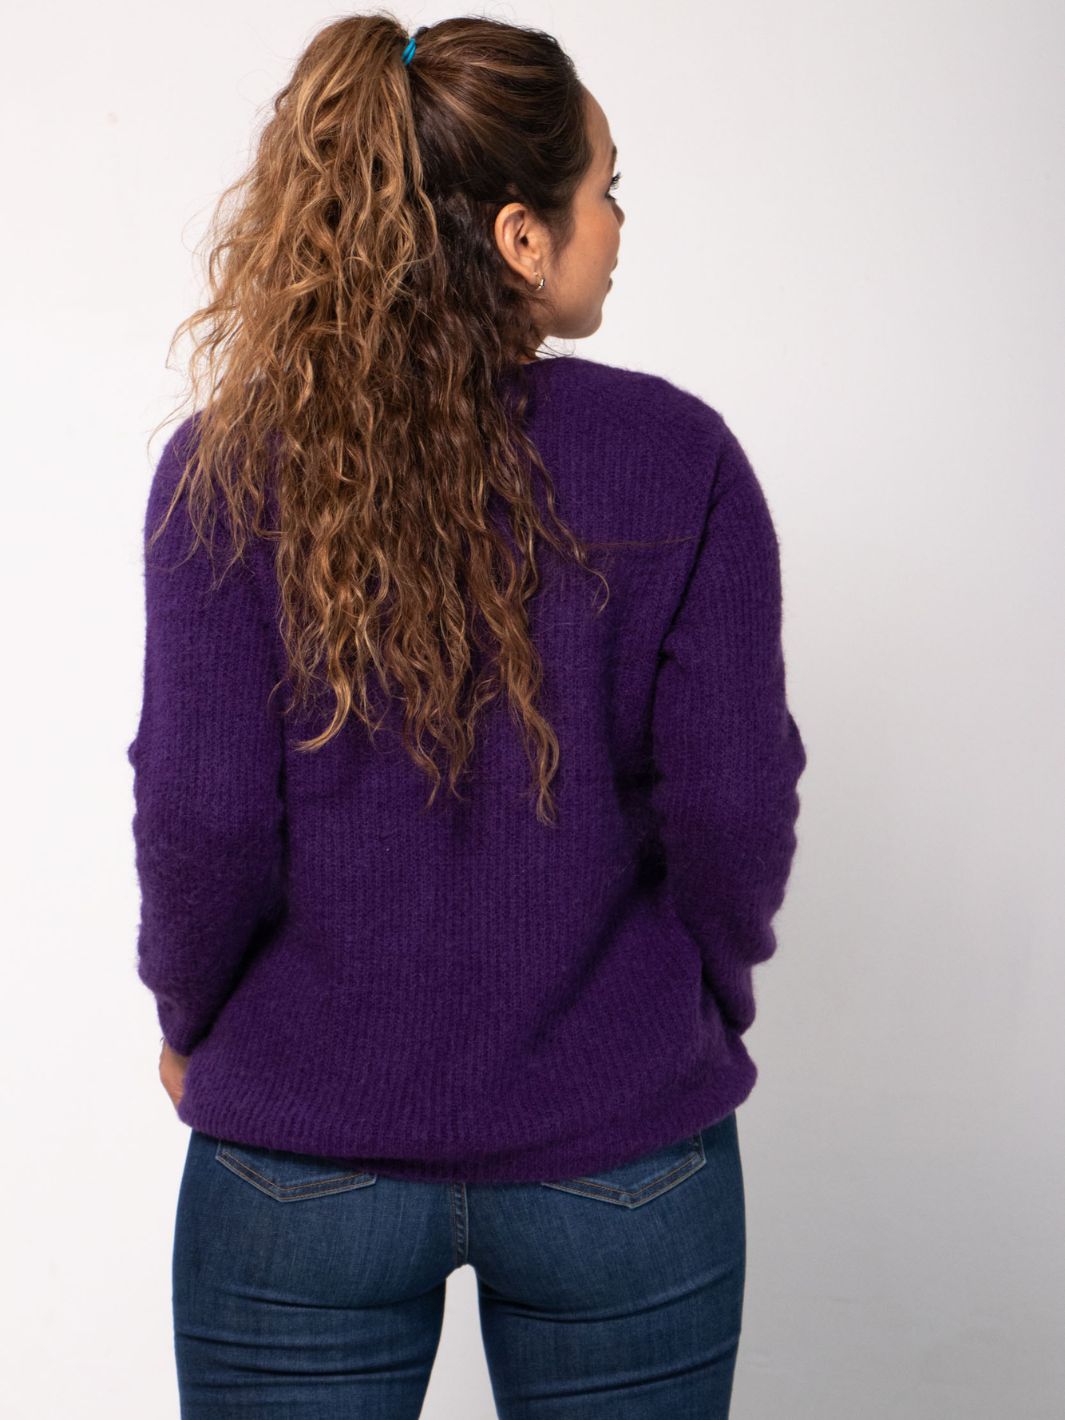 Celene V Neck Knitted Sweater - Pink